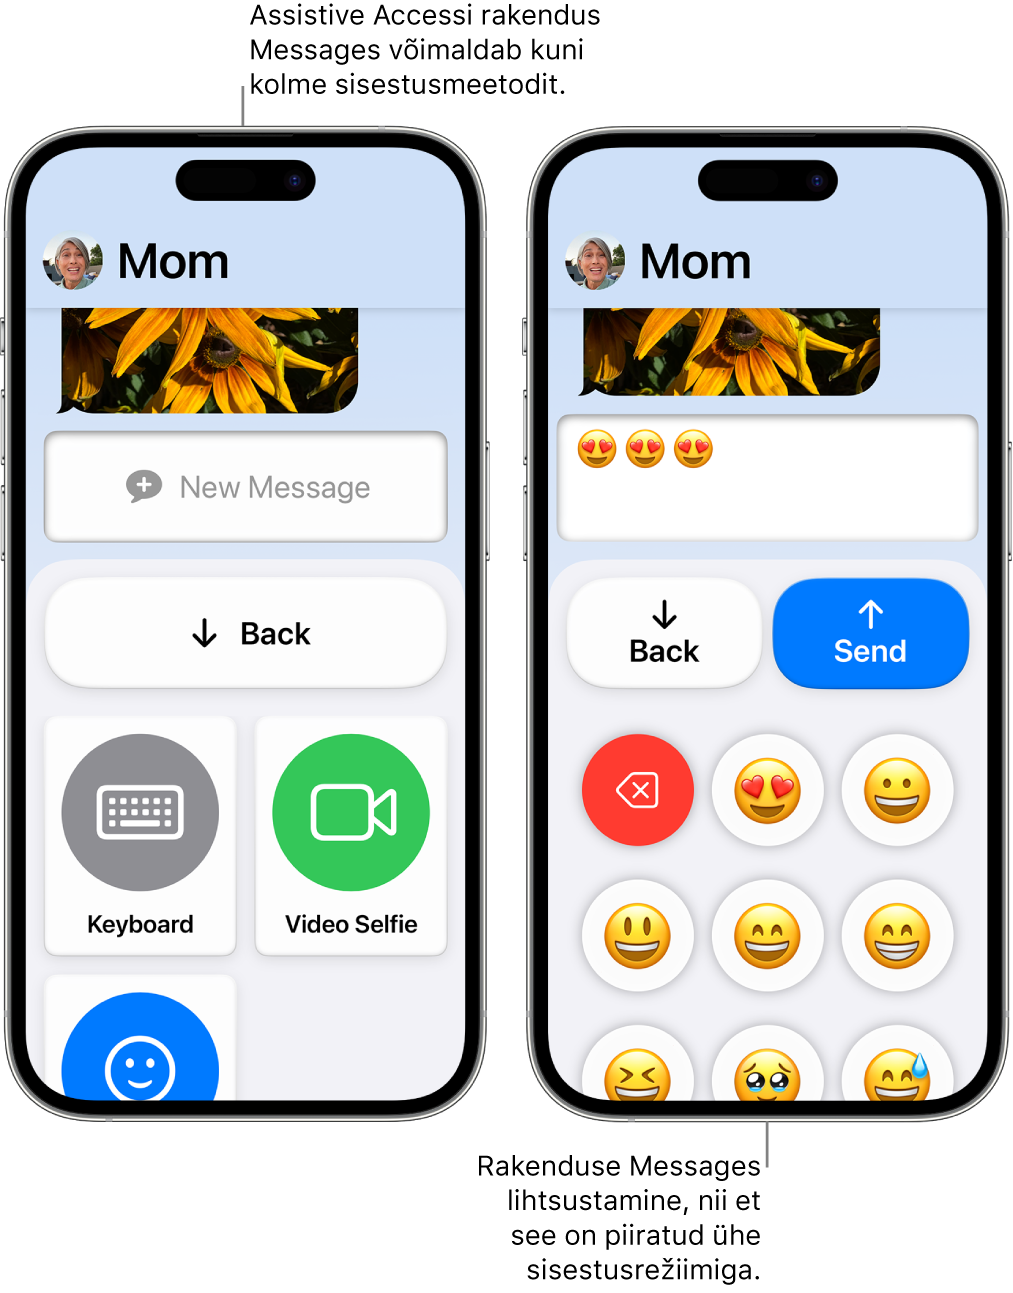 Kaks iPhone’i, milles kasutatakse Assistive Accessi. Ühes iPhone’is on rakendus Messages selliste kasutaja valitavate sisestusmeetoditega nagu Keyboard või Video Selfie. Teises näidatakse sõnumi saatmist emoji-klaviatuuriga.